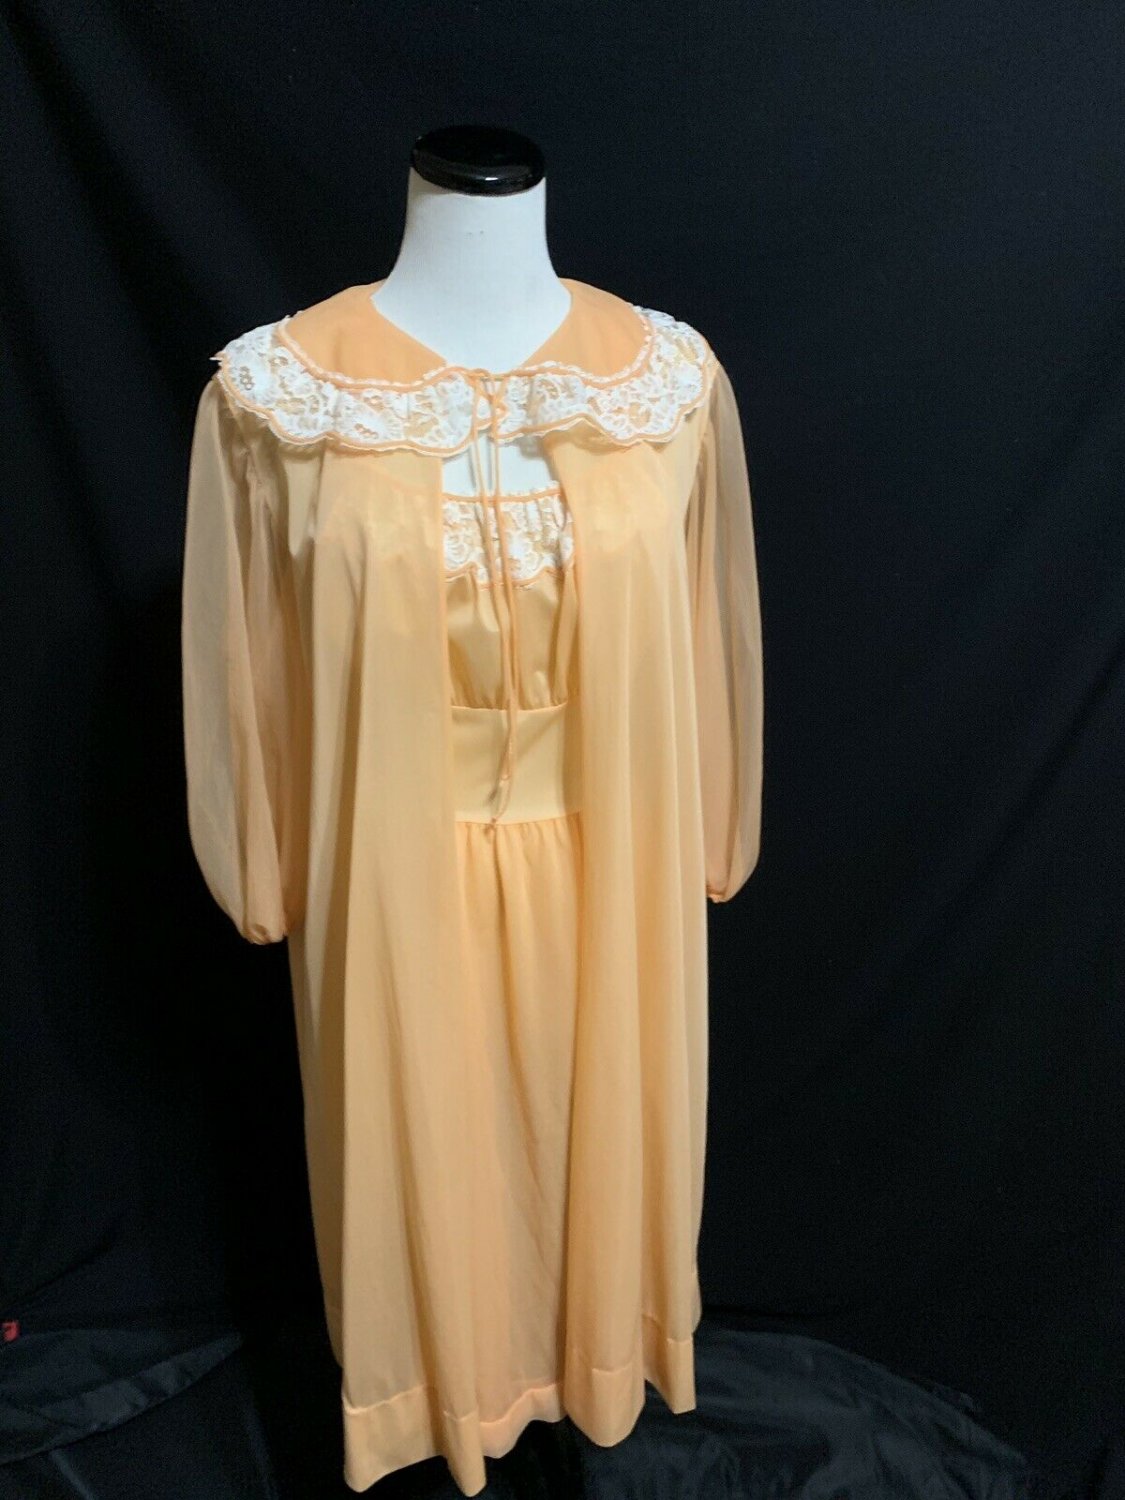 Vintage Faerie peignoir nightgown set nylon chiffon robe set Peach ...